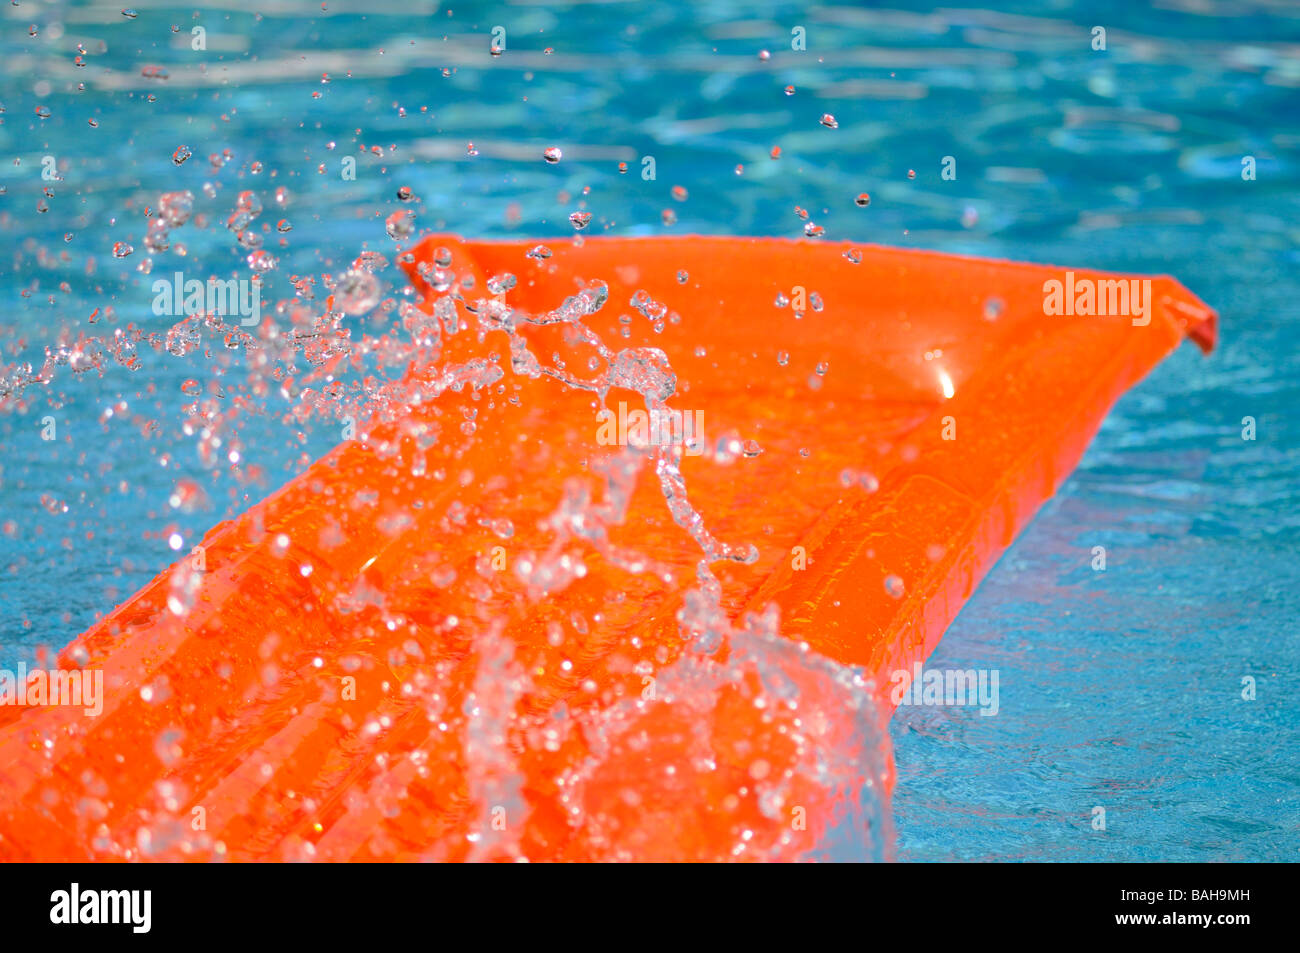 Spritzwasser über eine orange Luftmatratze schwimmend in einem Schwimmbad. Stockfoto